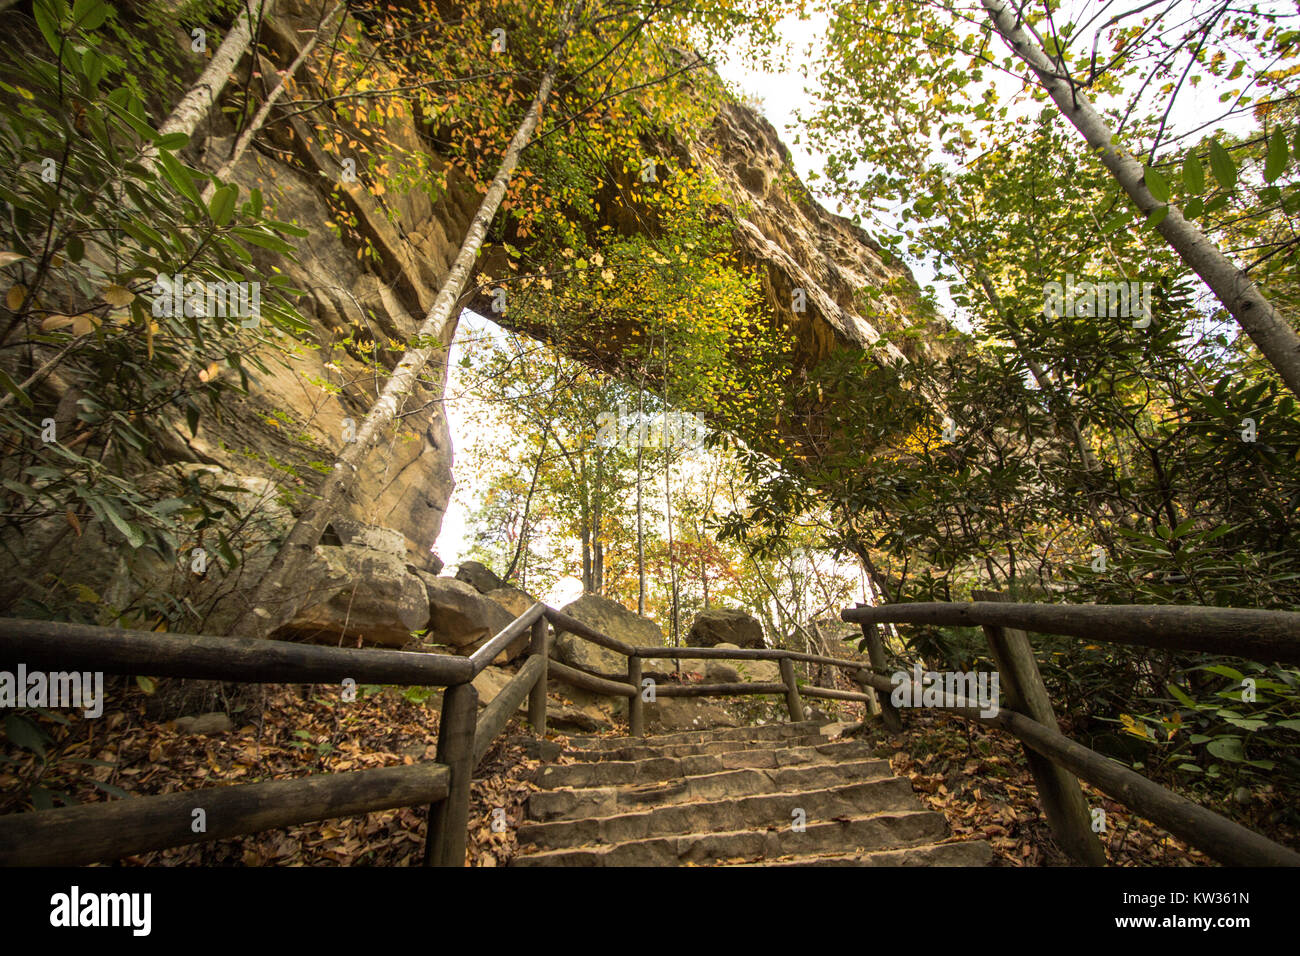  Salva anteprima Download Kentucky parchi stato scenario. Visualizzare e da sotto l'arcata in pietra nel ponte naturale parco dello stato Foto Stock